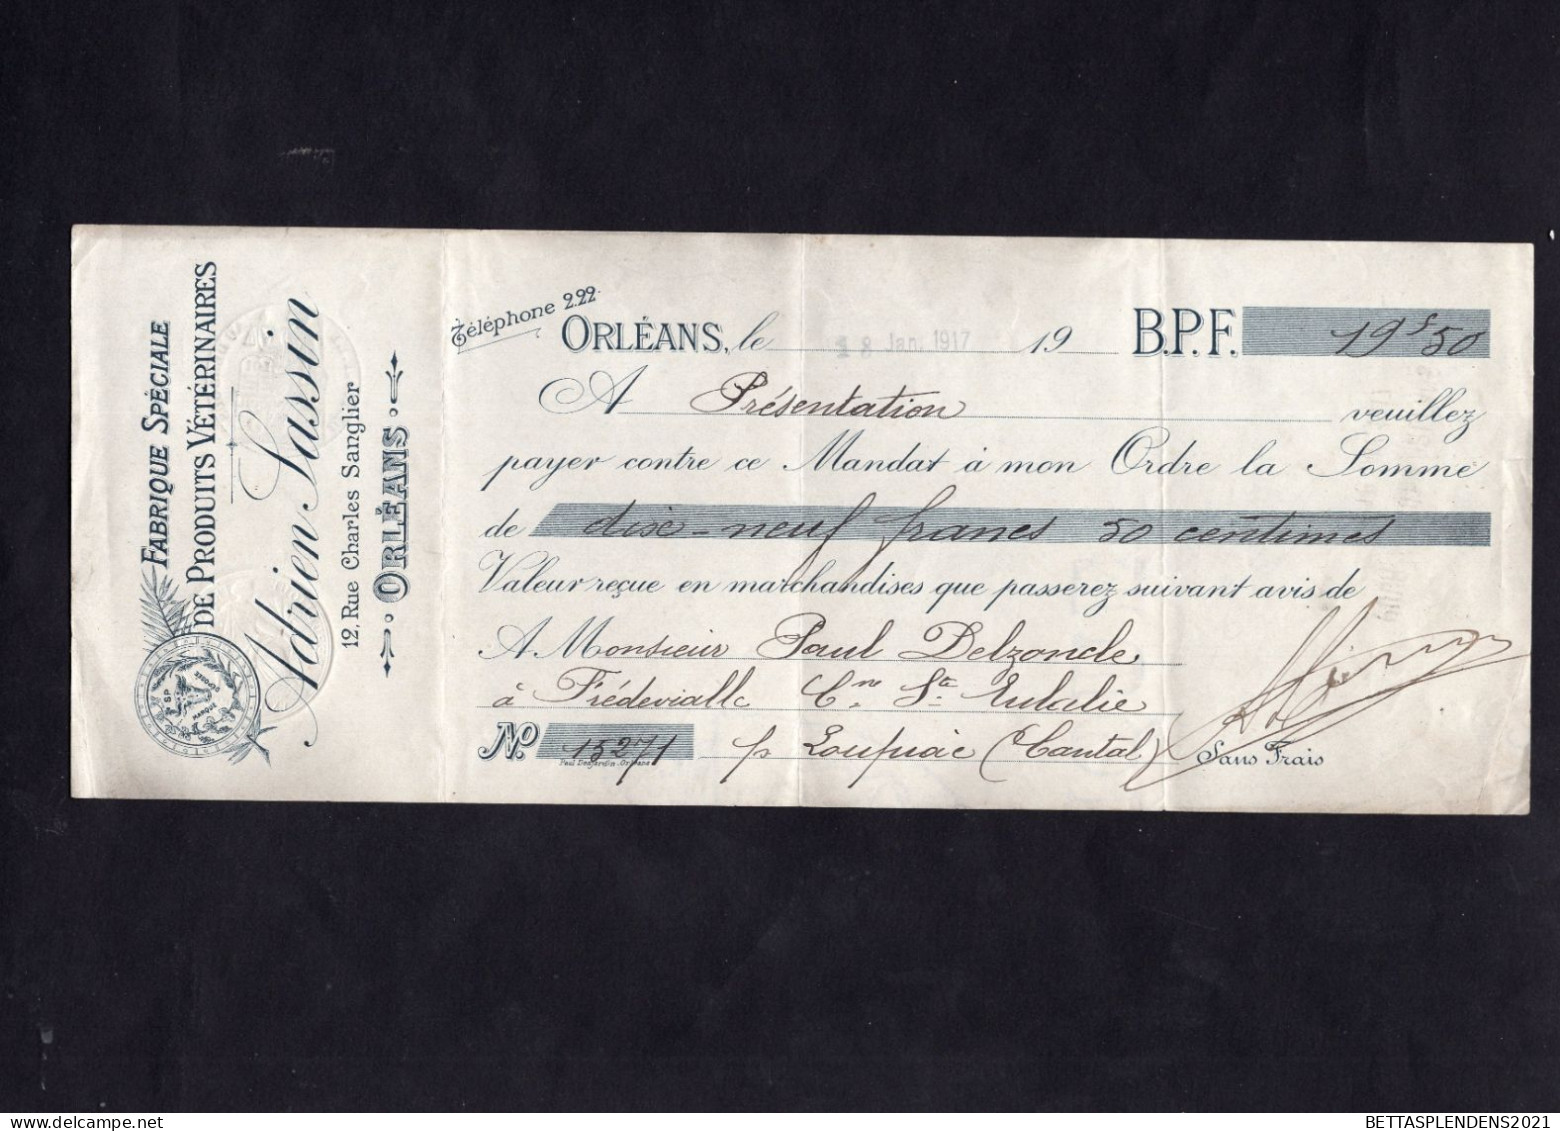 ORLEANS - Lettre De Change 1912 - Fabrique Spéciale De Produits Vétérinaires - Bills Of Exchange